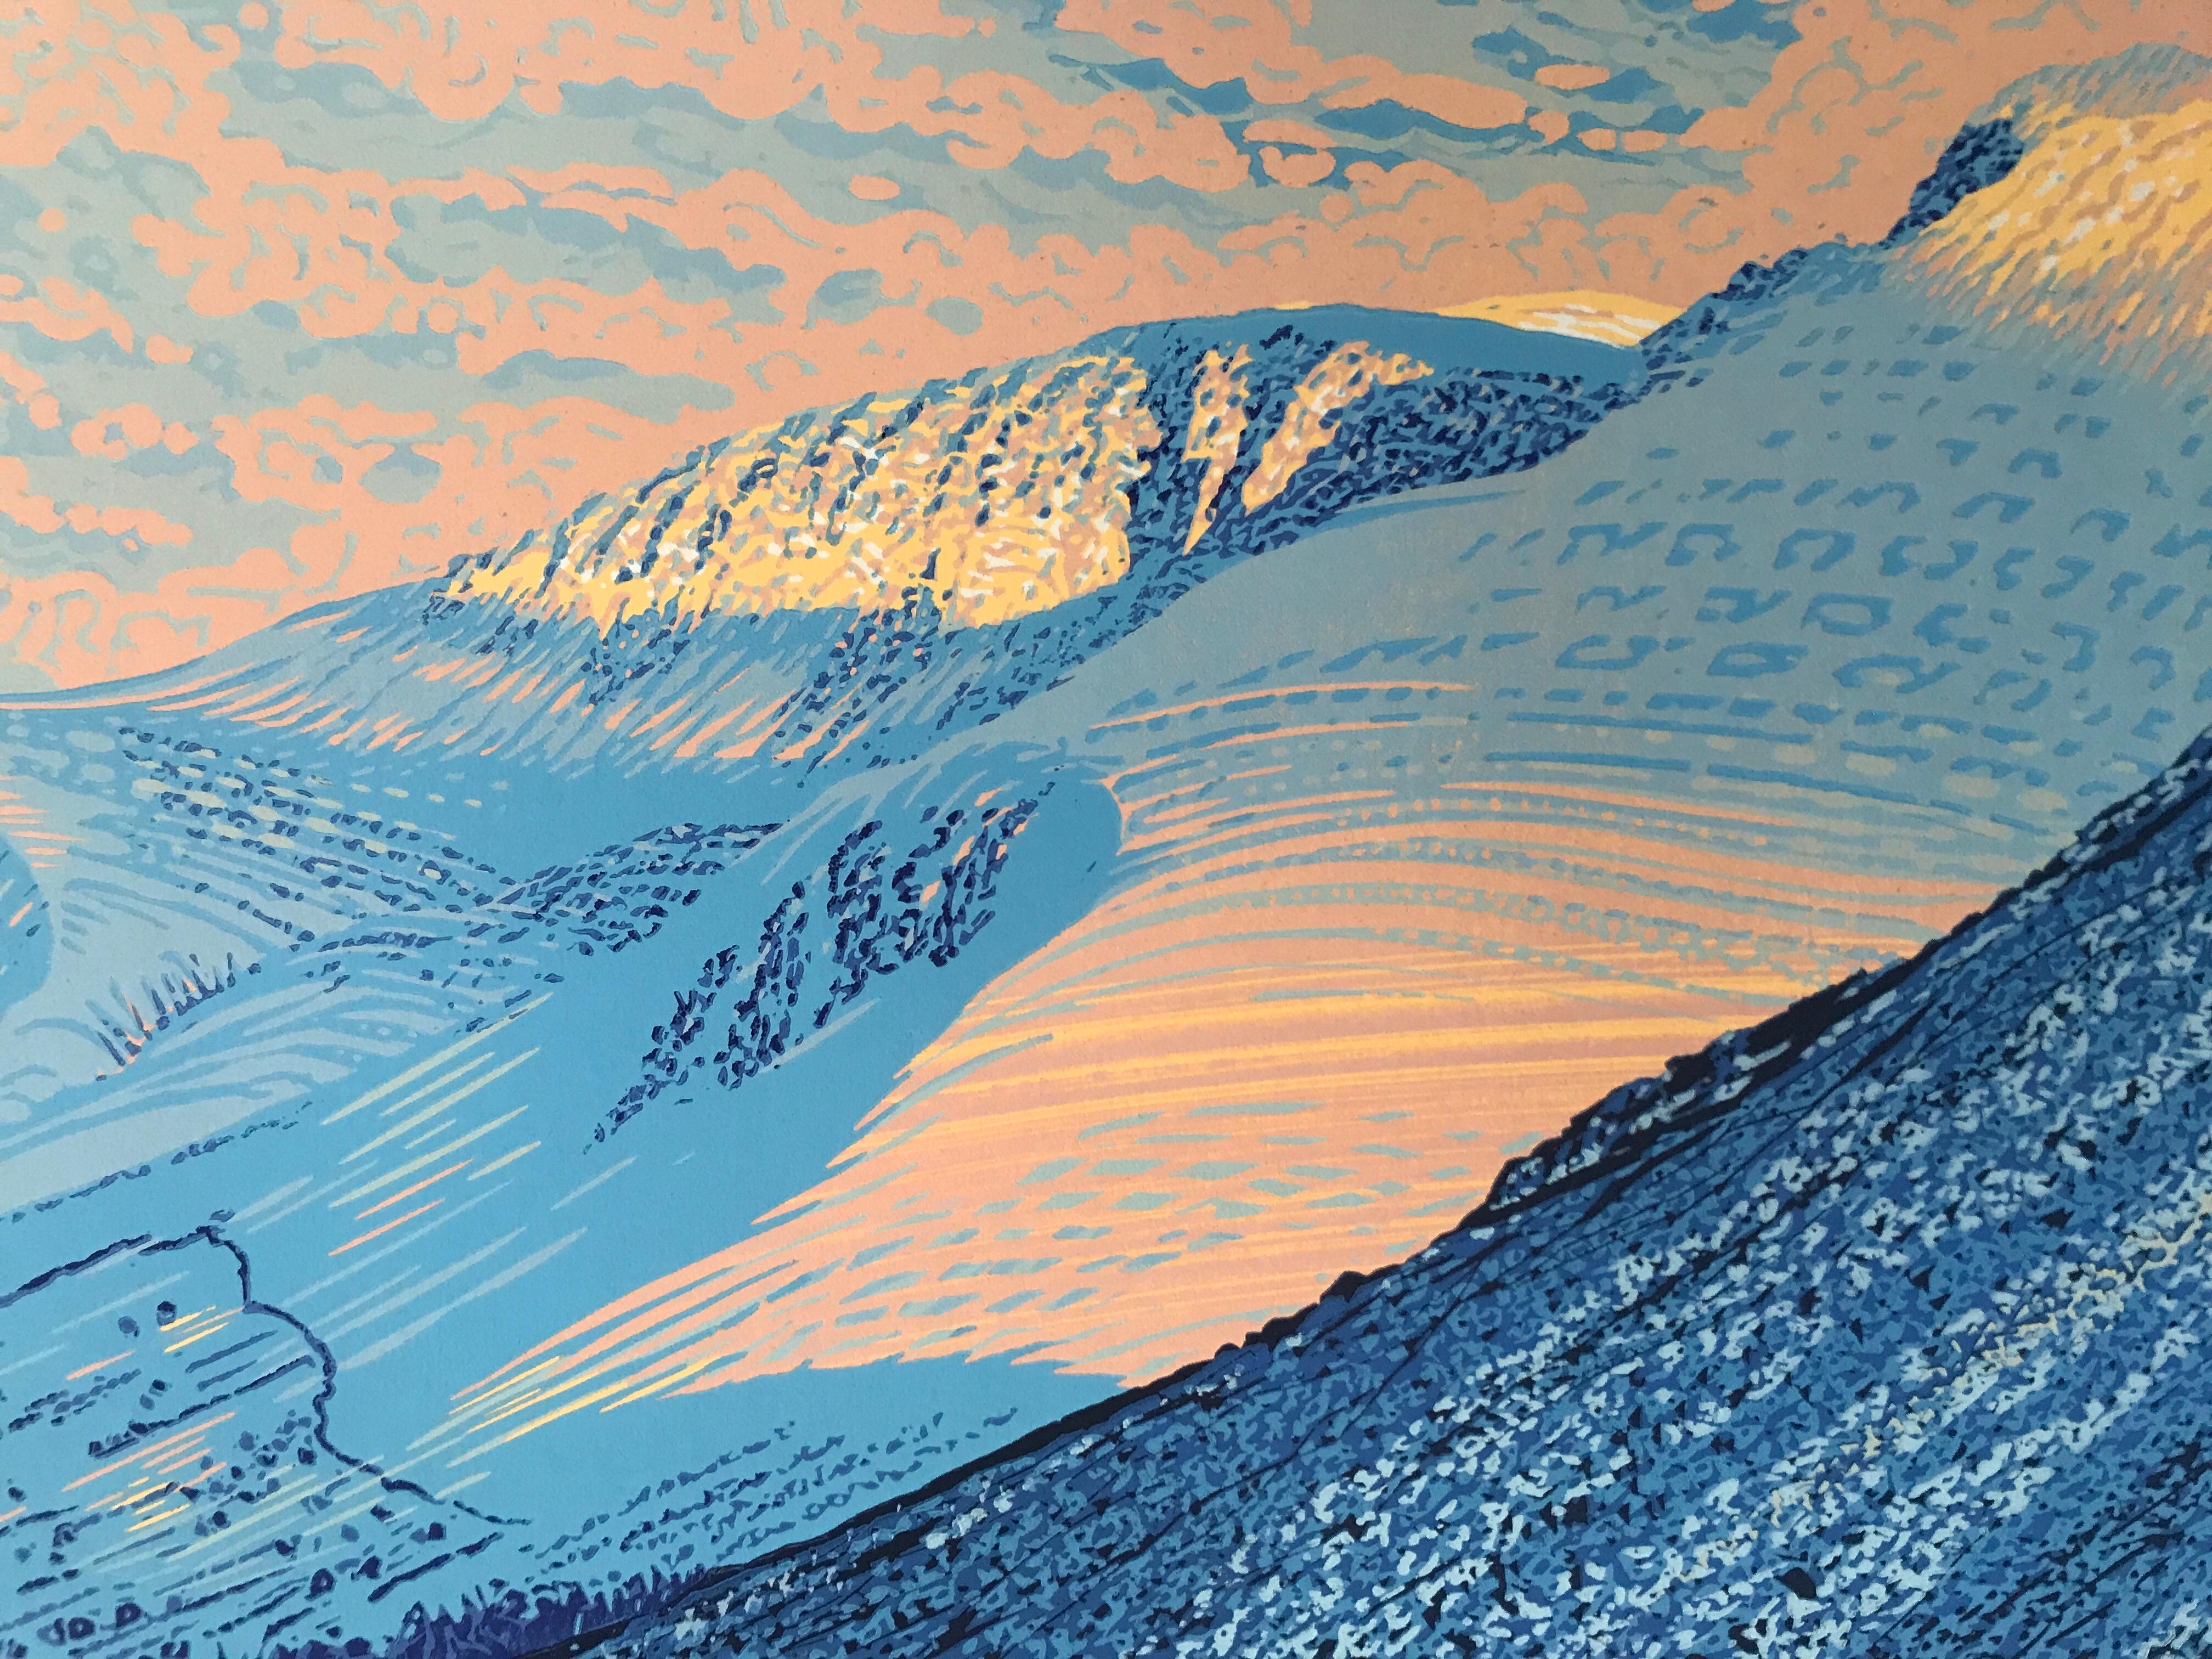 Sun on the Scafells est une impression en édition limitée de Mark A Pearce, inspirée par les Sea Fells dans le Lake District.

INFORMATIONS COMPLÉMENTAIRES :
Soleil sur les Scafells par Mark A Pearce
Linoprint en édition limitée
Édition de